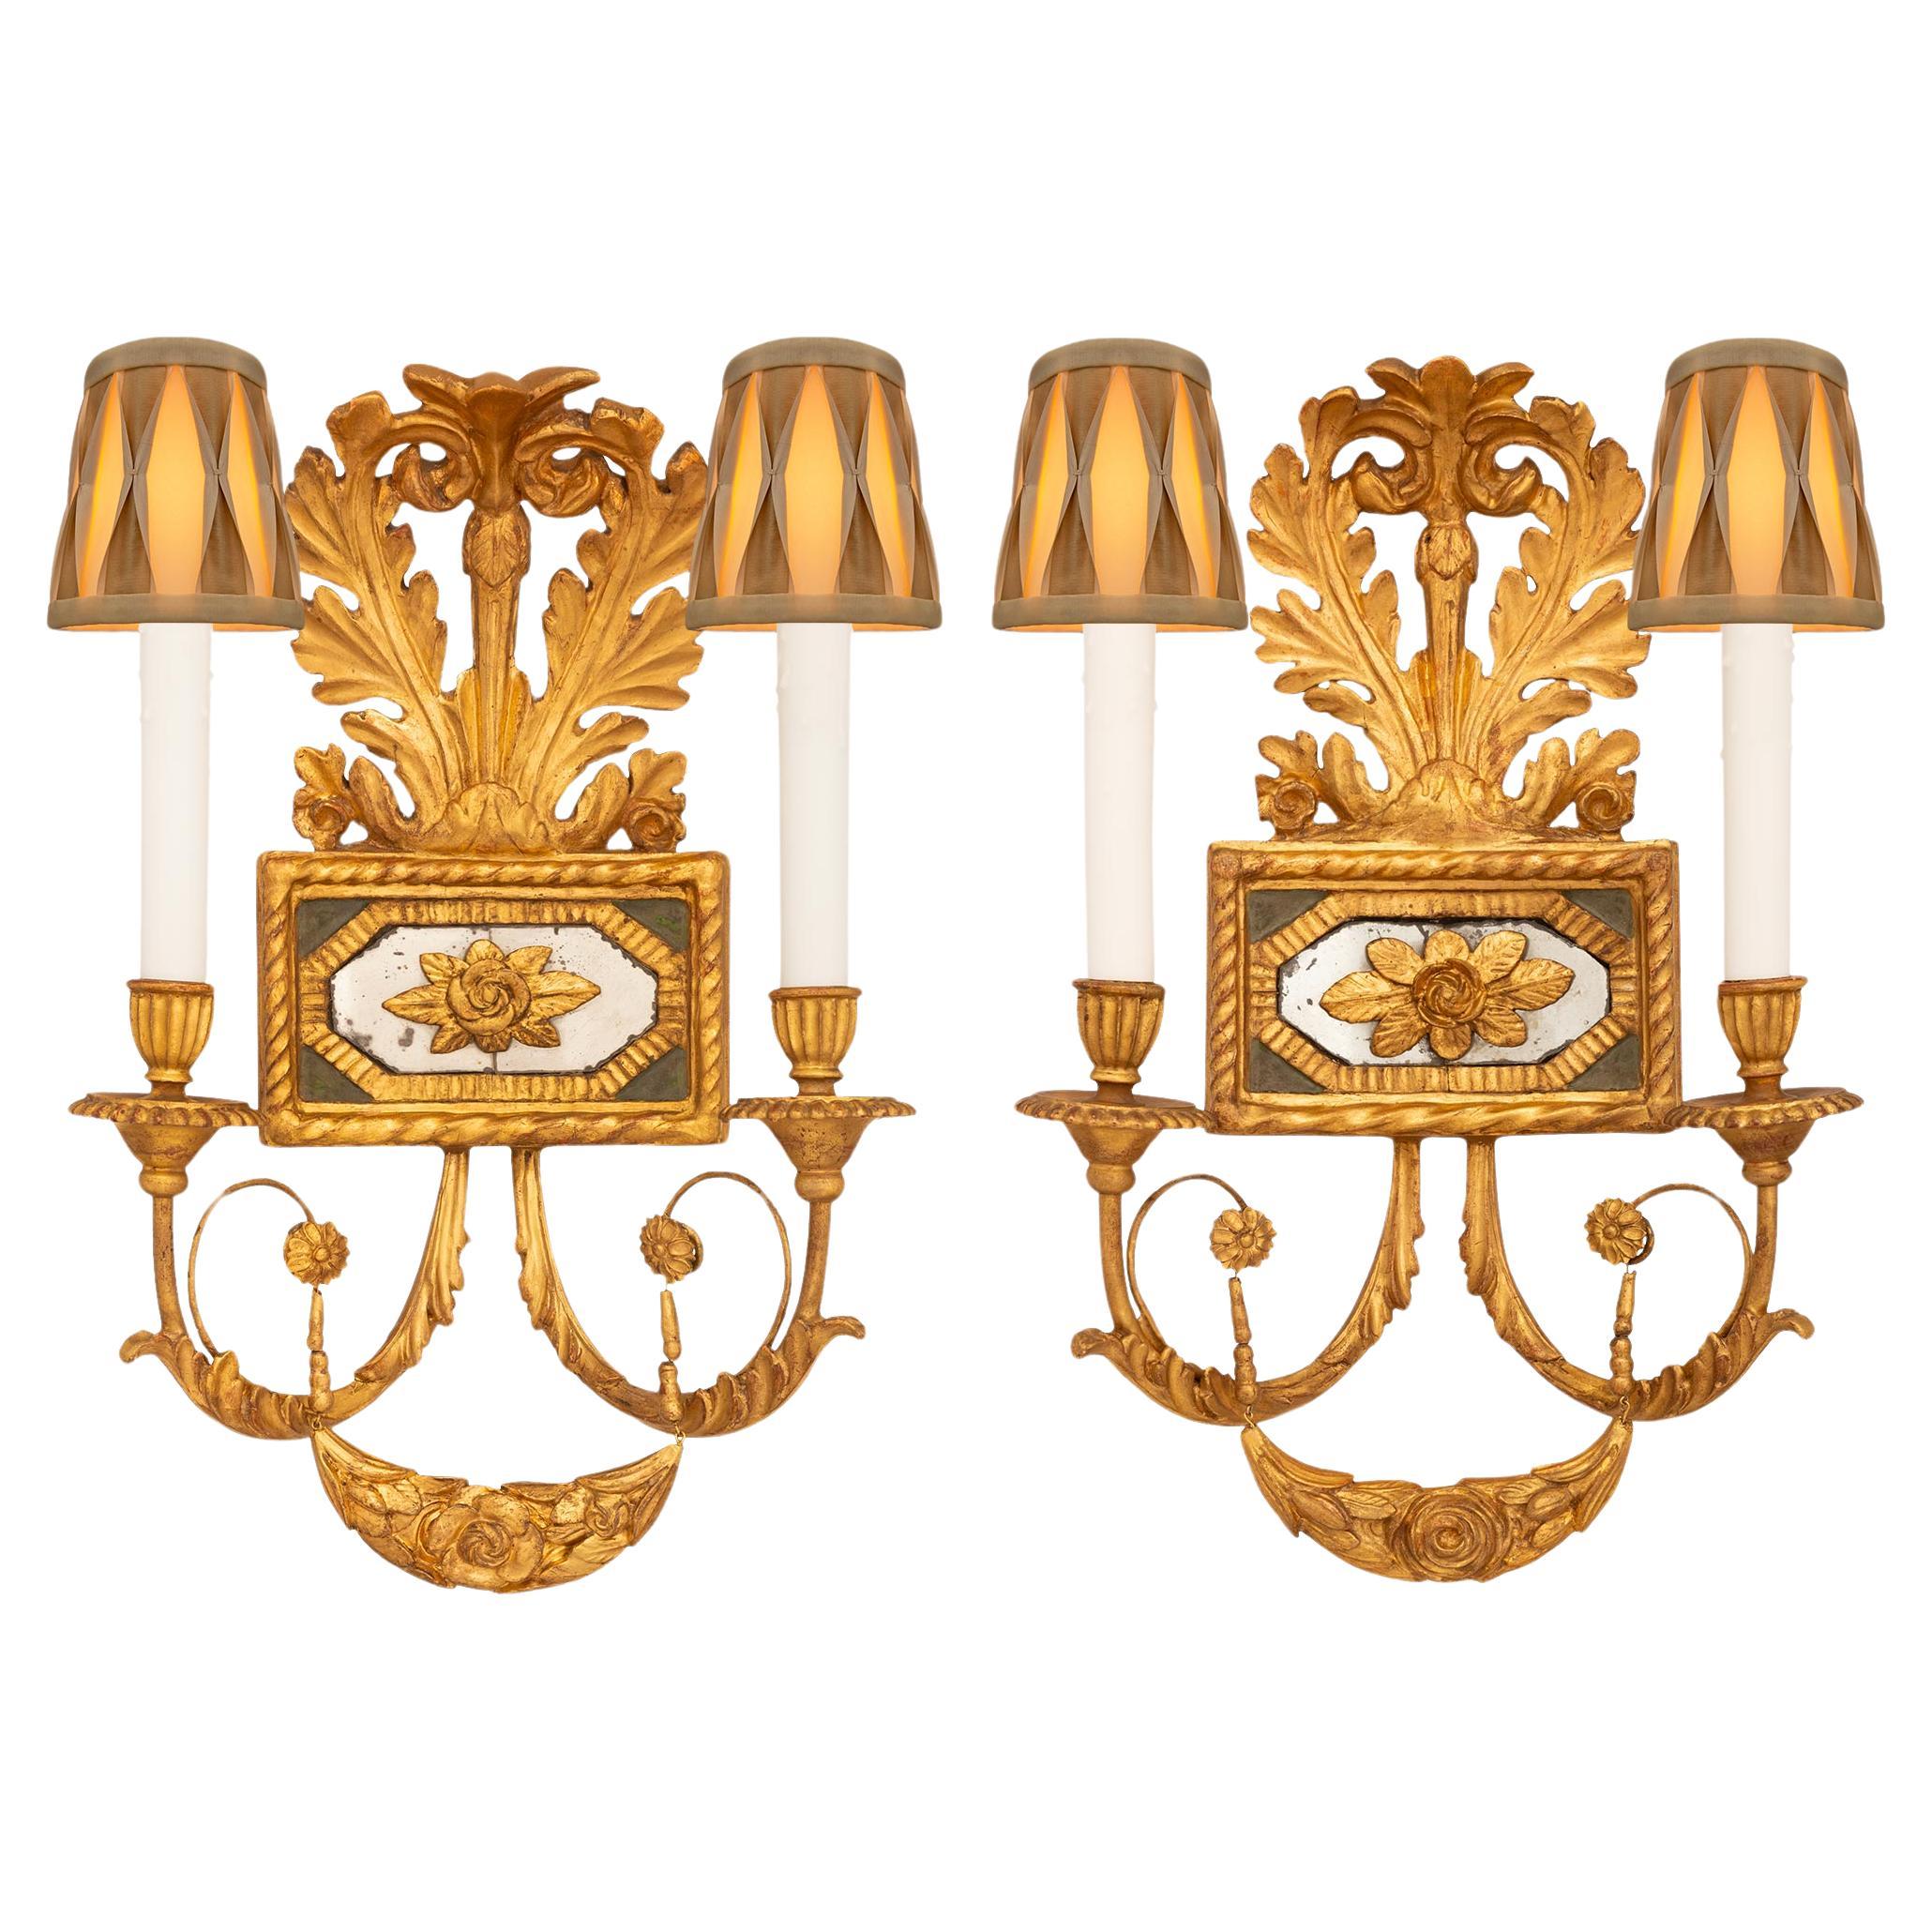 Paire d'appliques italiennes du début du 19e siècle de style néo-classique. Appliques à miroir en bois doré